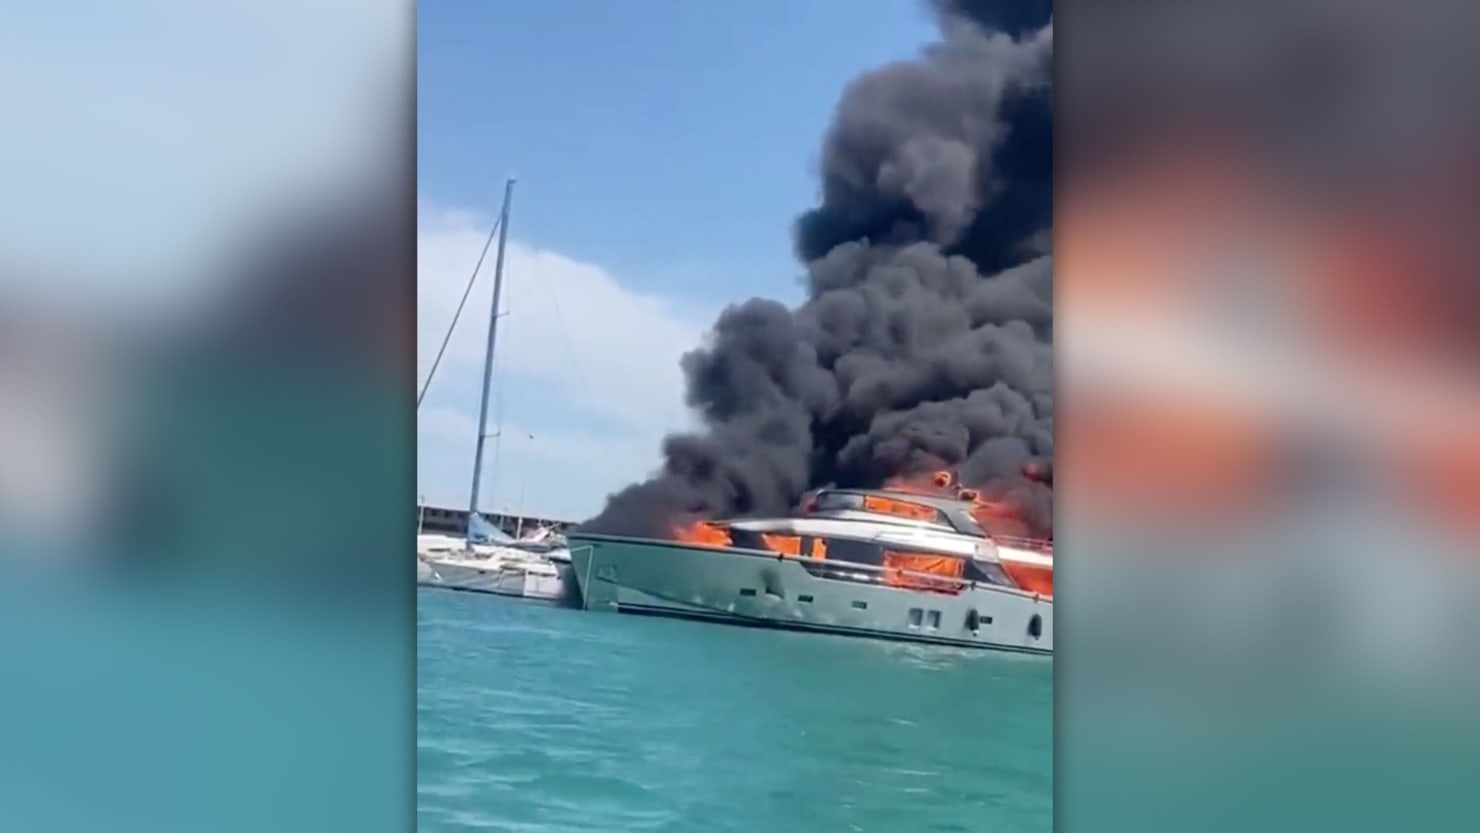 Mira este barco de 88 pies ardiendo en el mar en el puerto de Valencia, España